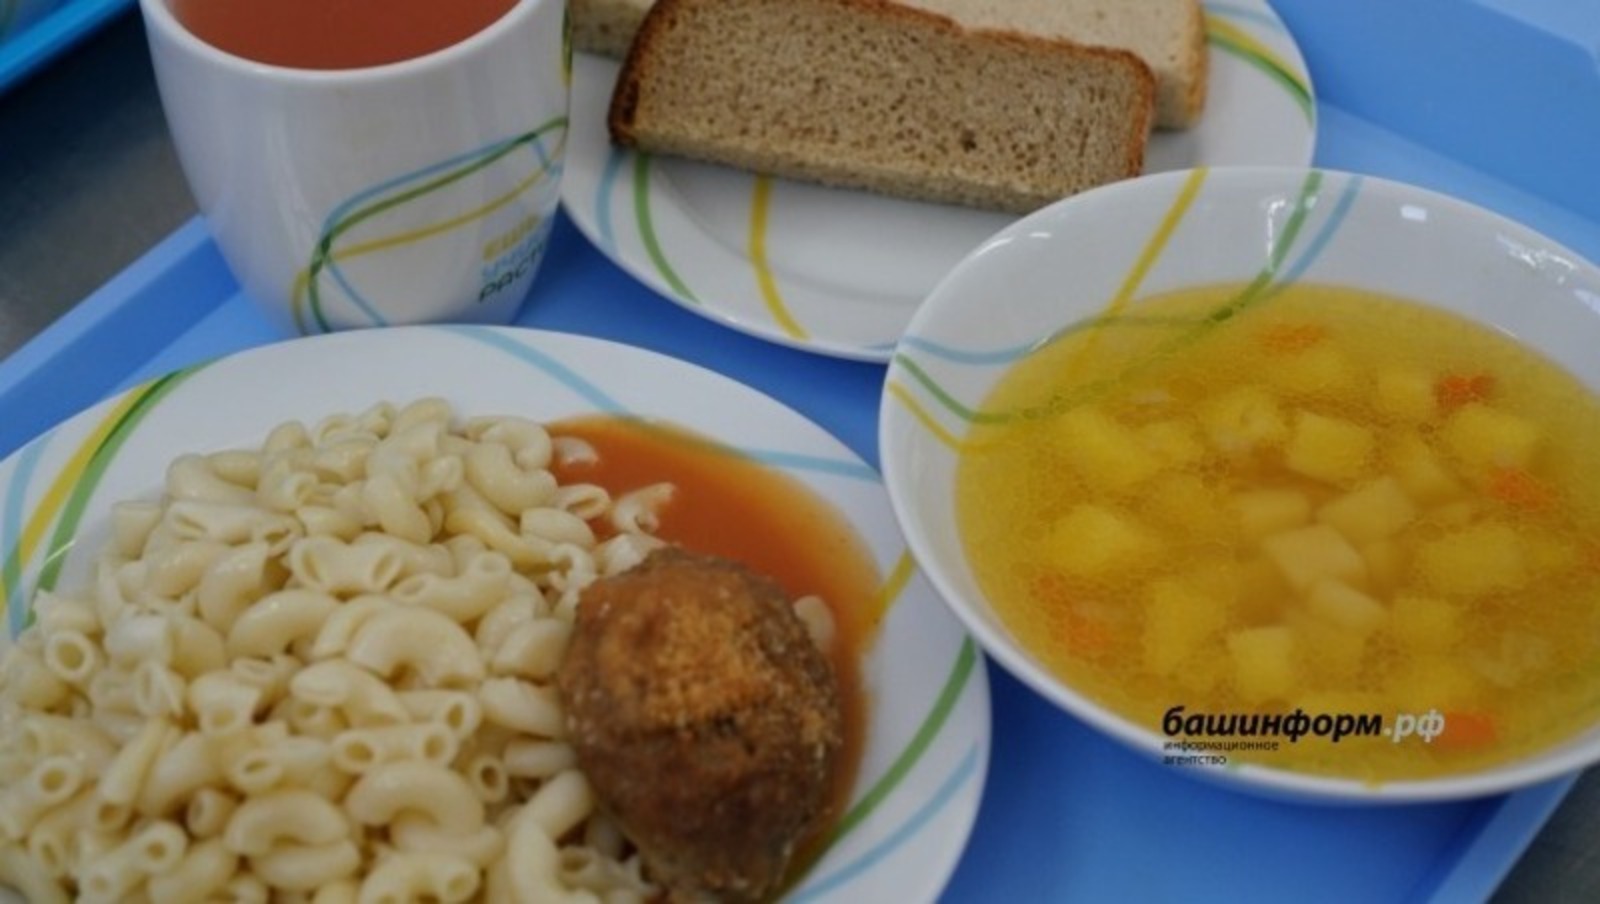 Правительство Башкирии контролирует стоимость питания в детских садах и школах